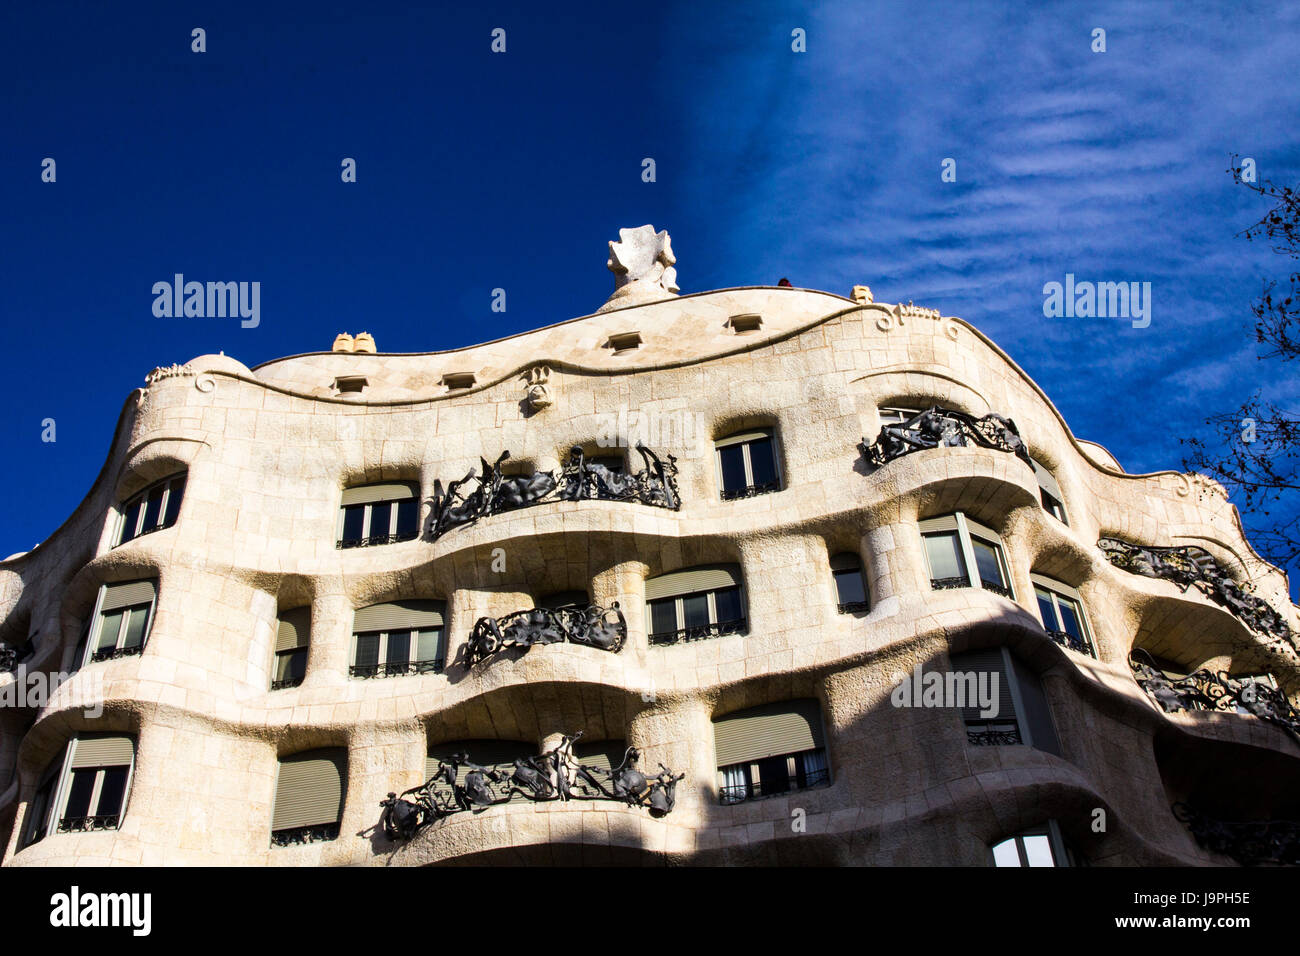 La Casa Milà, llamada popularmente La Pedrera, es un edificio modernista de Gaudí destaca por su fachada ondulante y torcer sus balcones de hierro forjado. Foto de stock